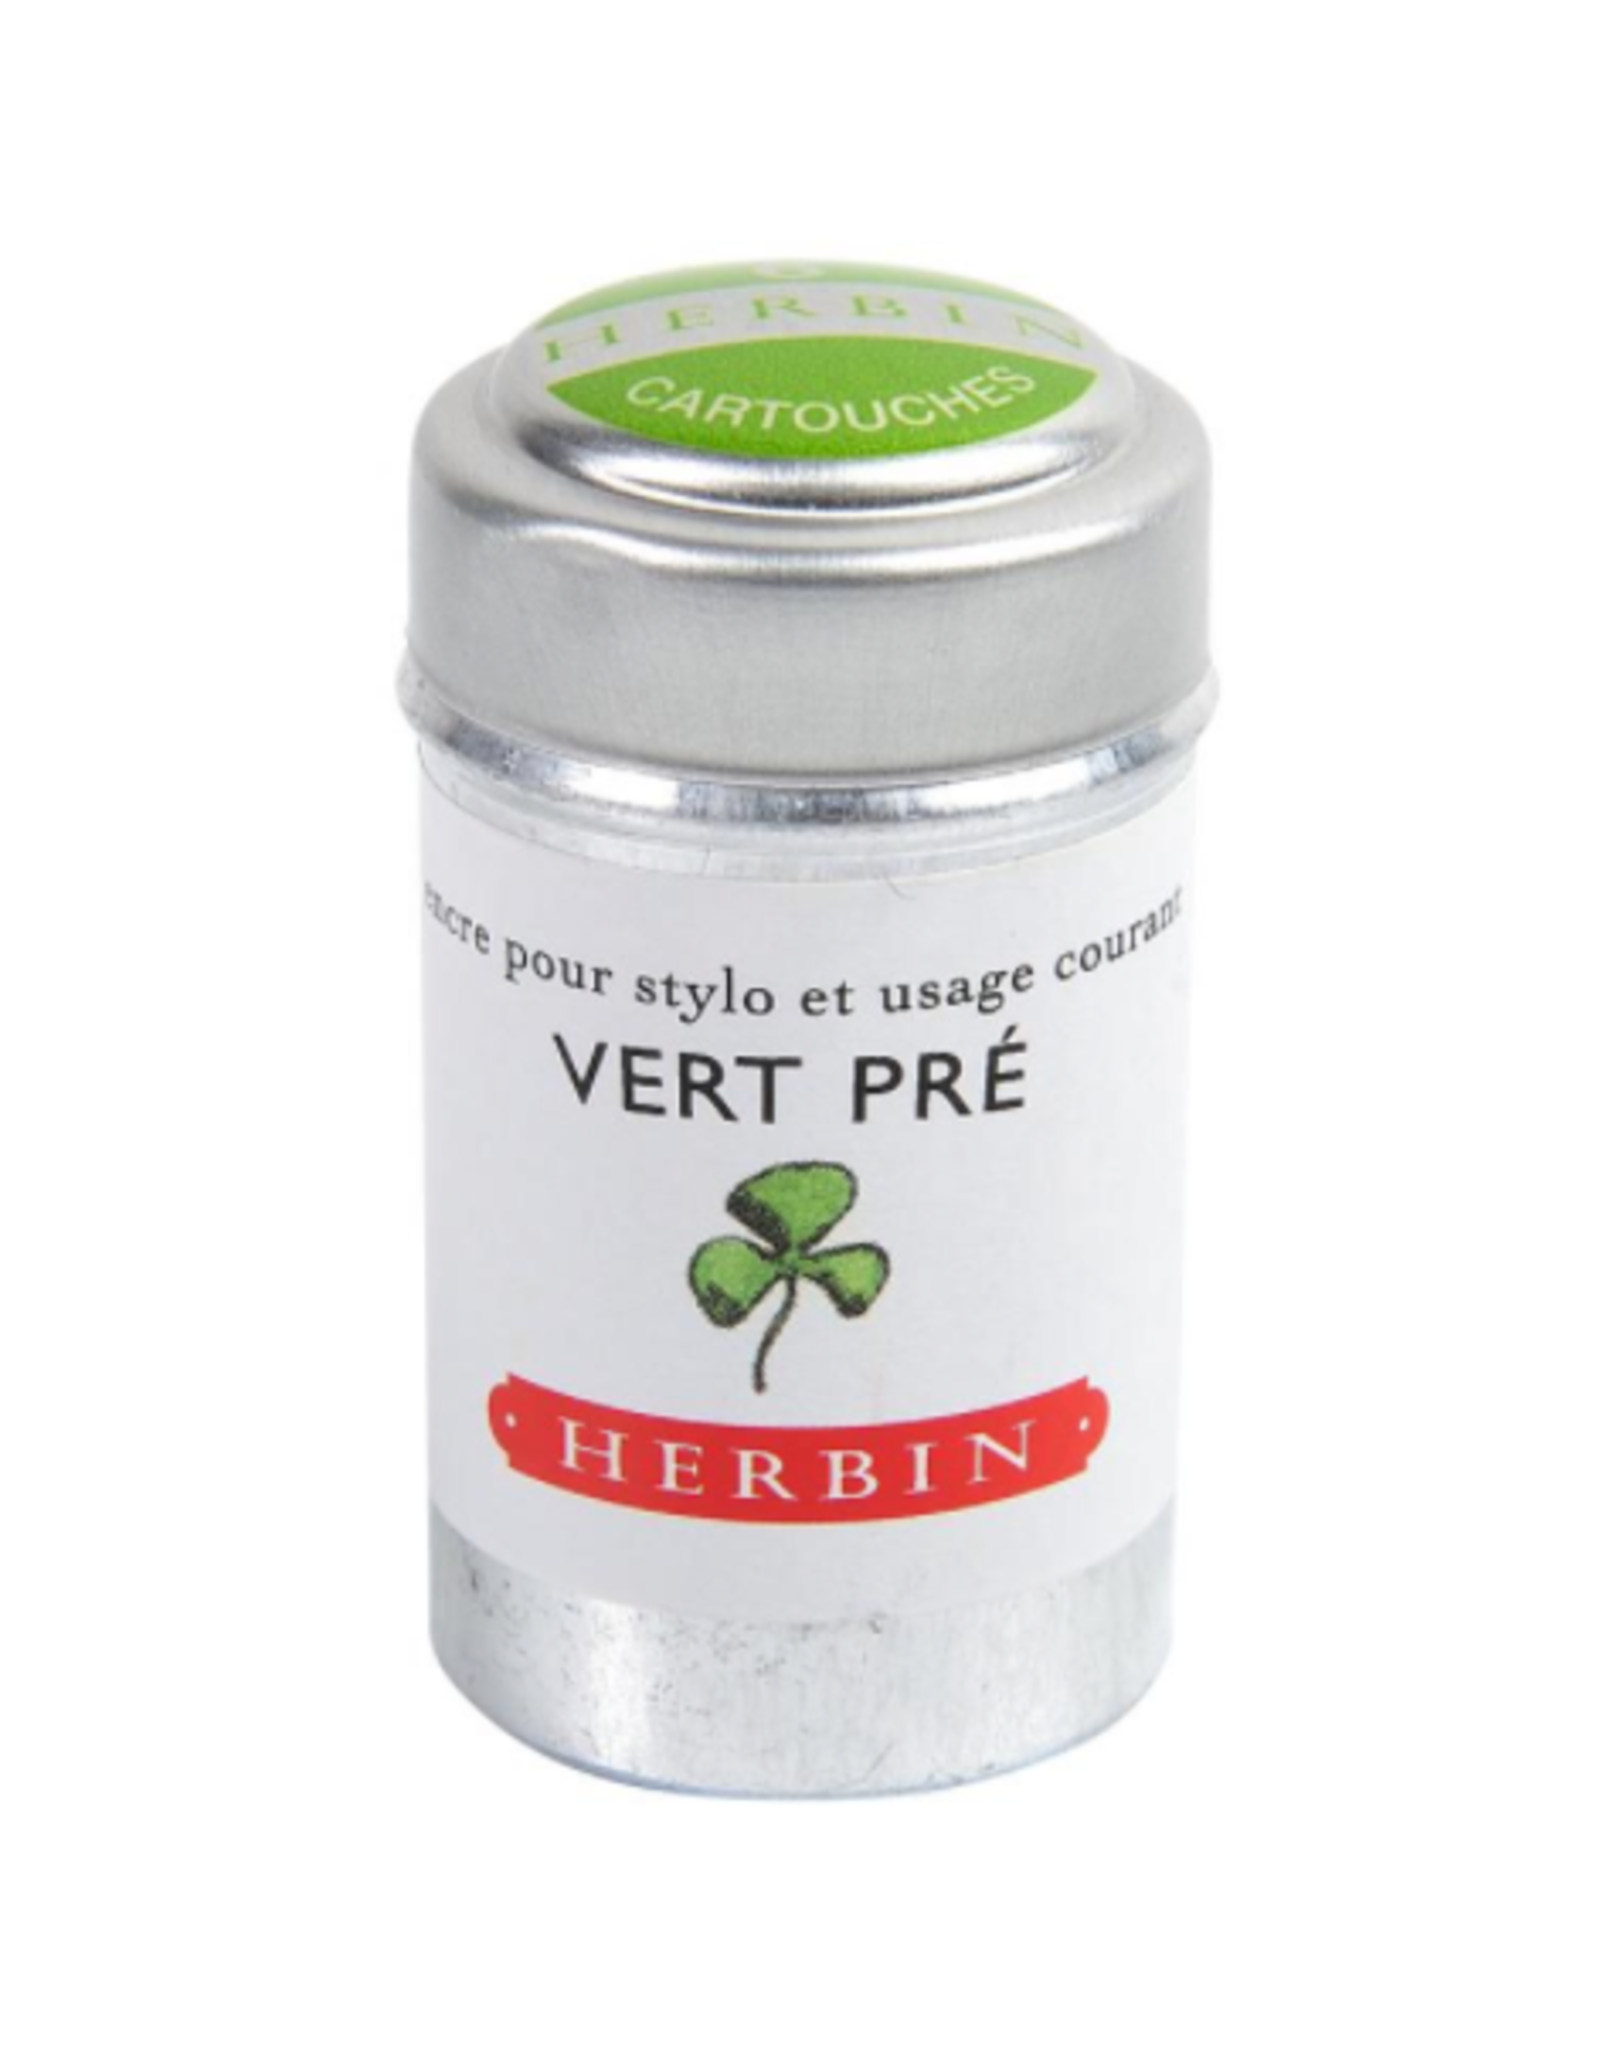 J. Herbin Vert Pré 6 Cartridges Tin Light Green Ink